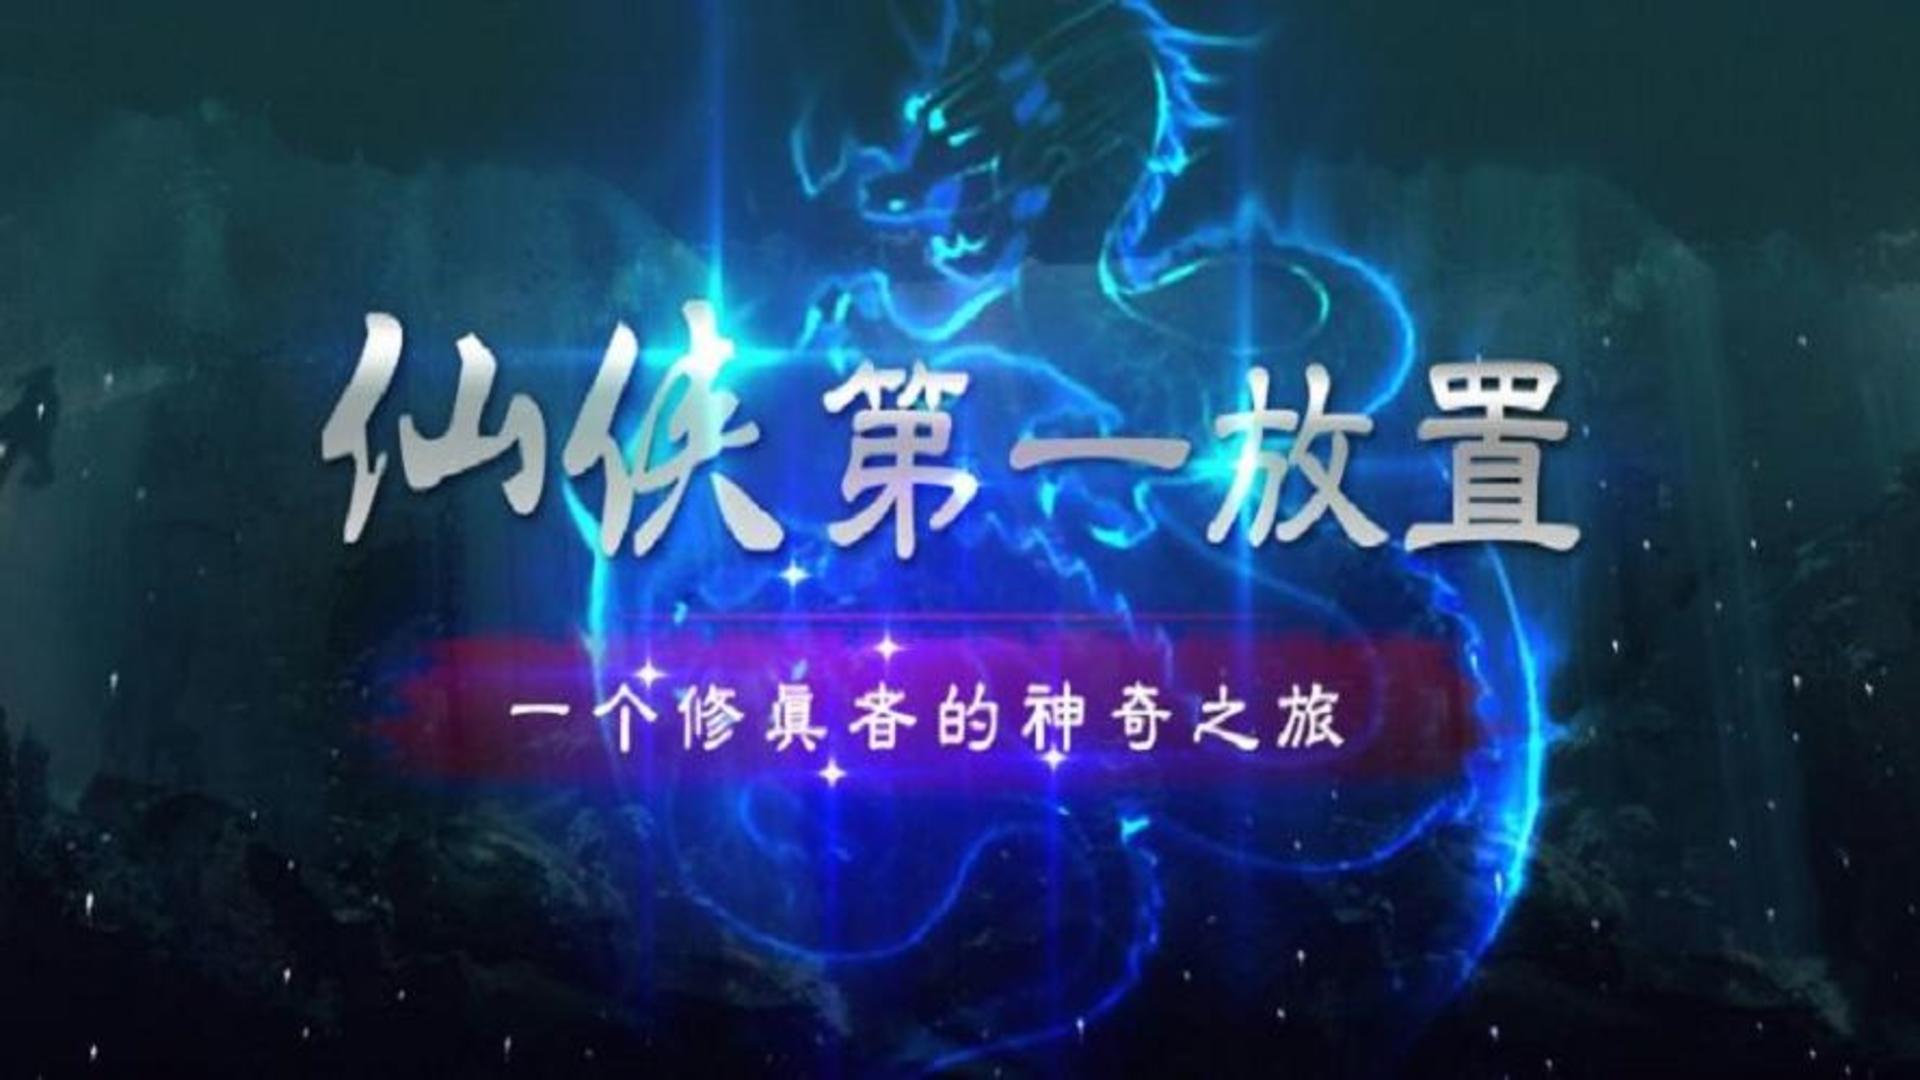 Banner of 仙俠第一放置·青城山下 